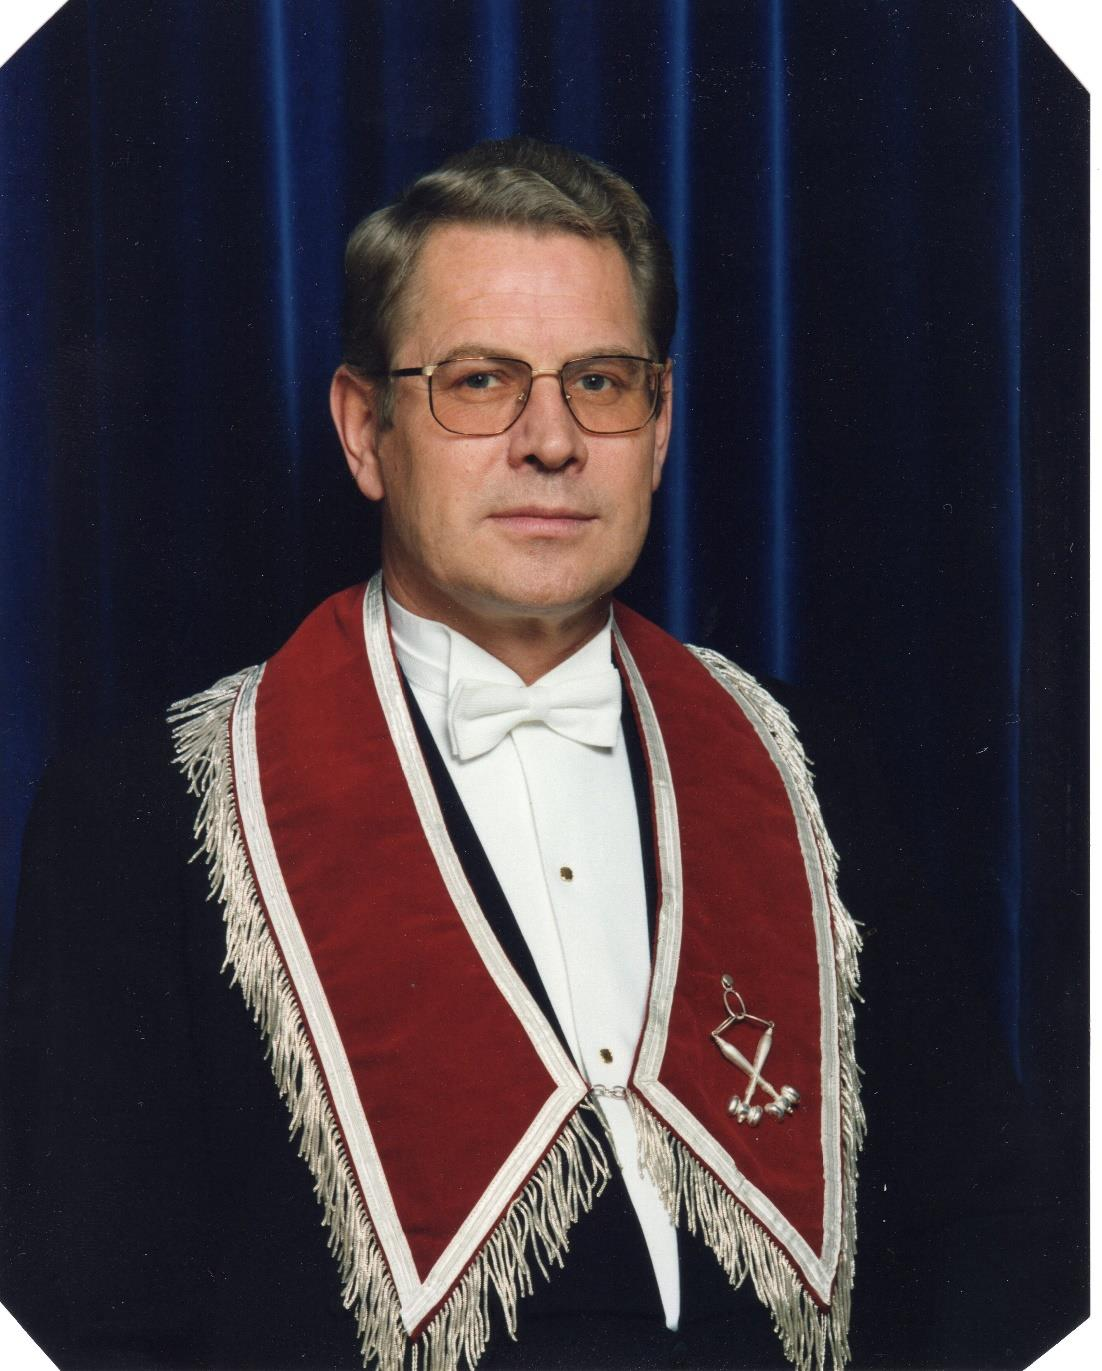 KNUT FIRING var Logens andre Overmester, fra 1989 til 1991. Han ble født 7.7.1944 og har i mange år bodd på Jevnaker, men er fremdeles medlem av Logen.